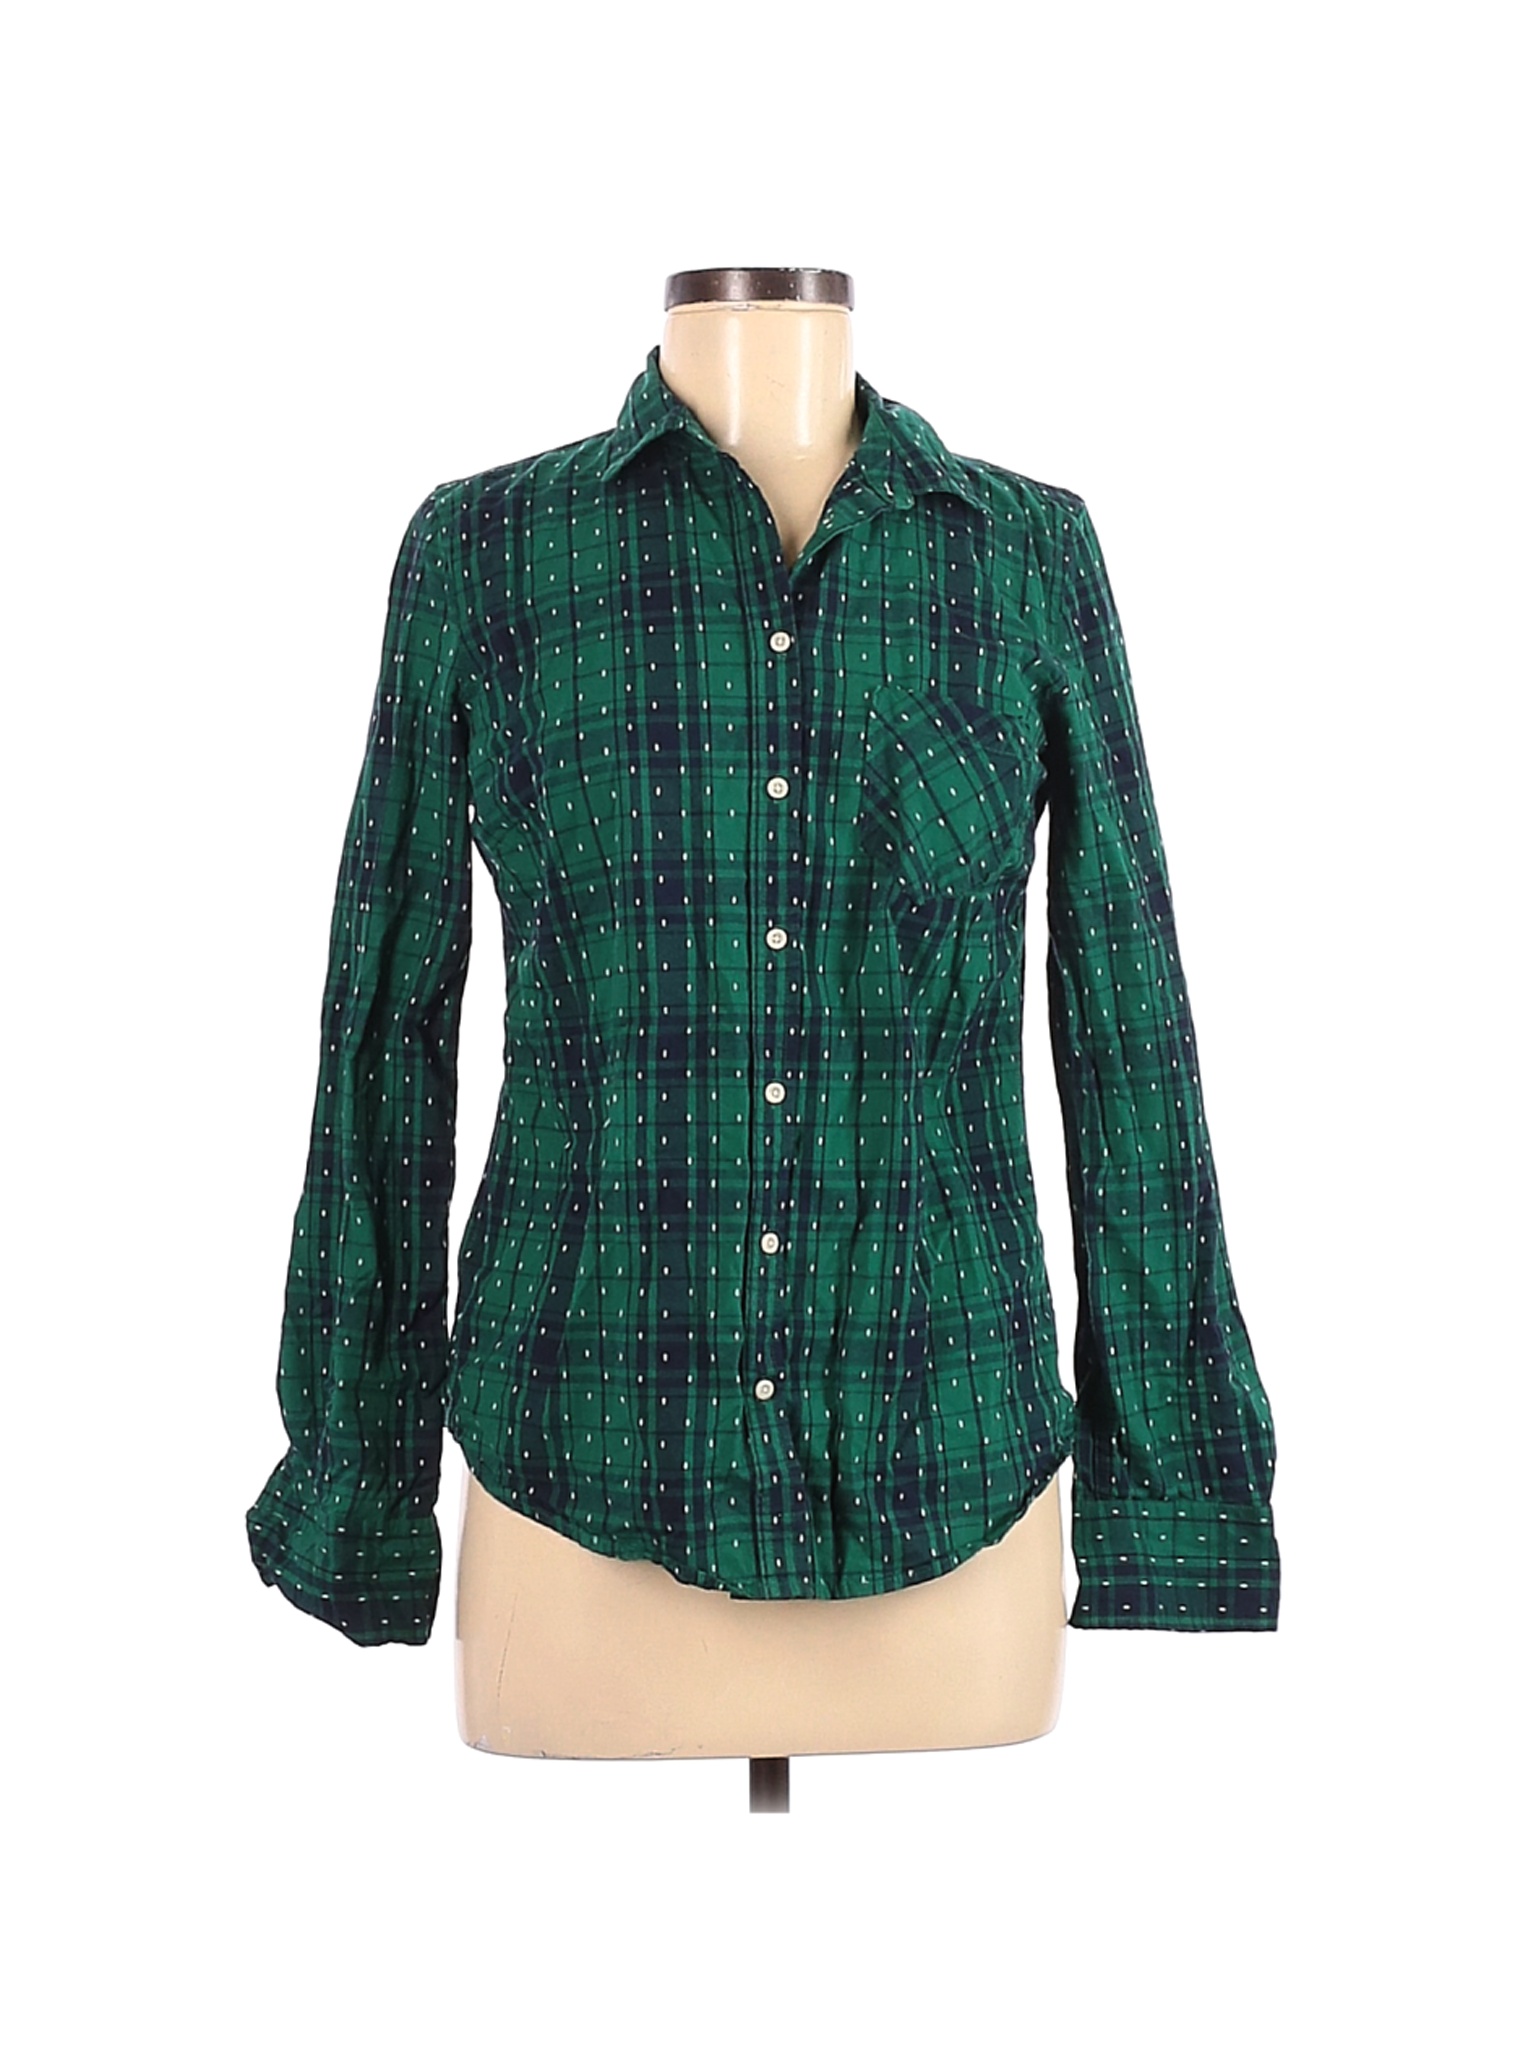 Merona Women Green Long Sleeve Button-Down Shirt S | eBay